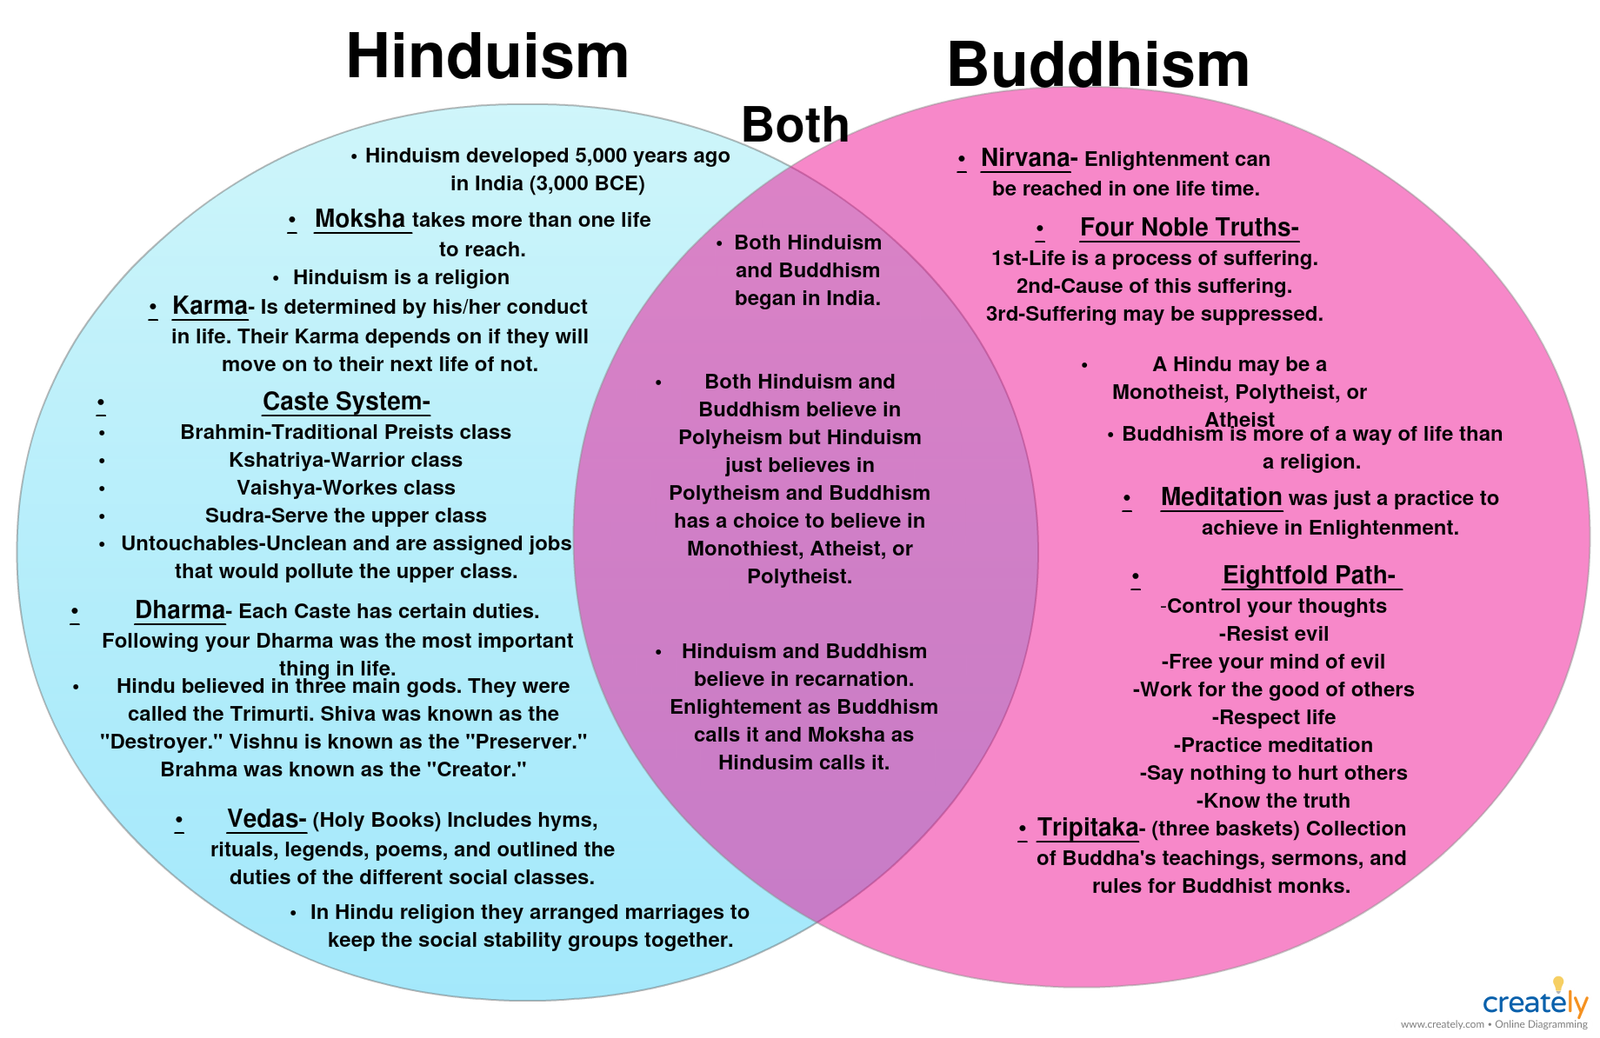 सनातन धर्म/नेपालीको धर्म , हिन्दु धर्म अनि अरु धर्महरुको भिन्नता 